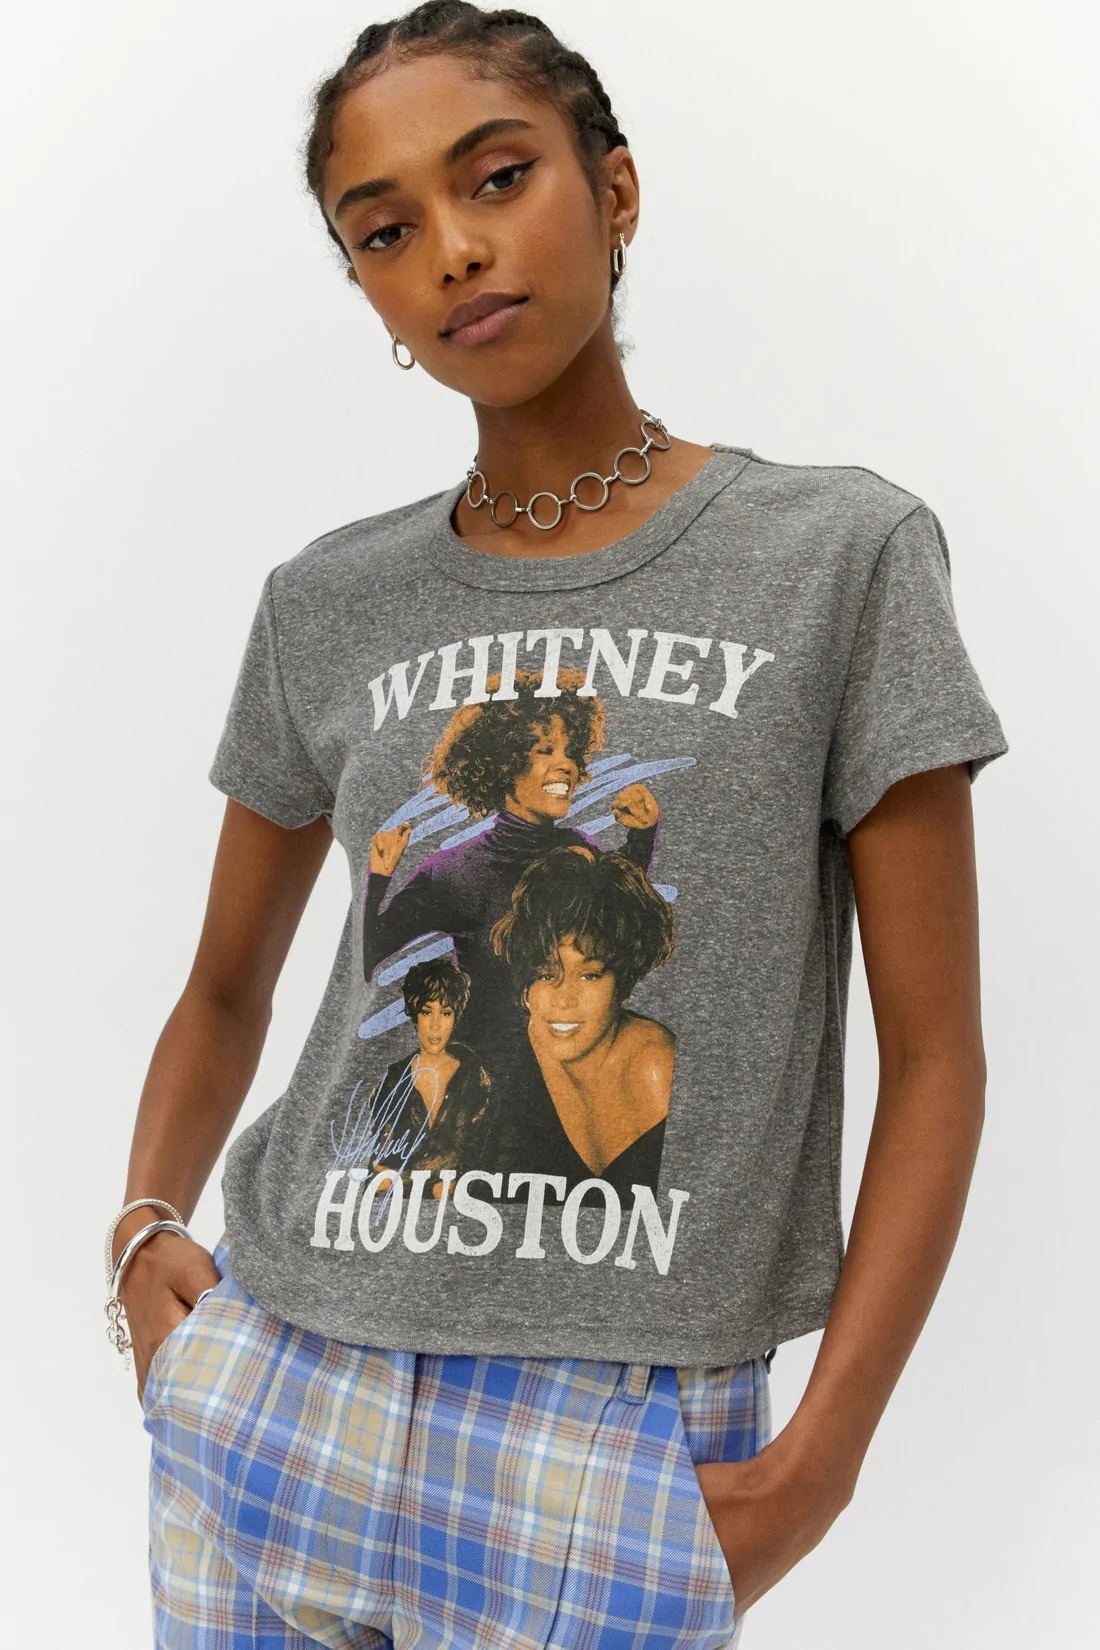 Daydreamer Whitney Houston Dance Shrunken Tee